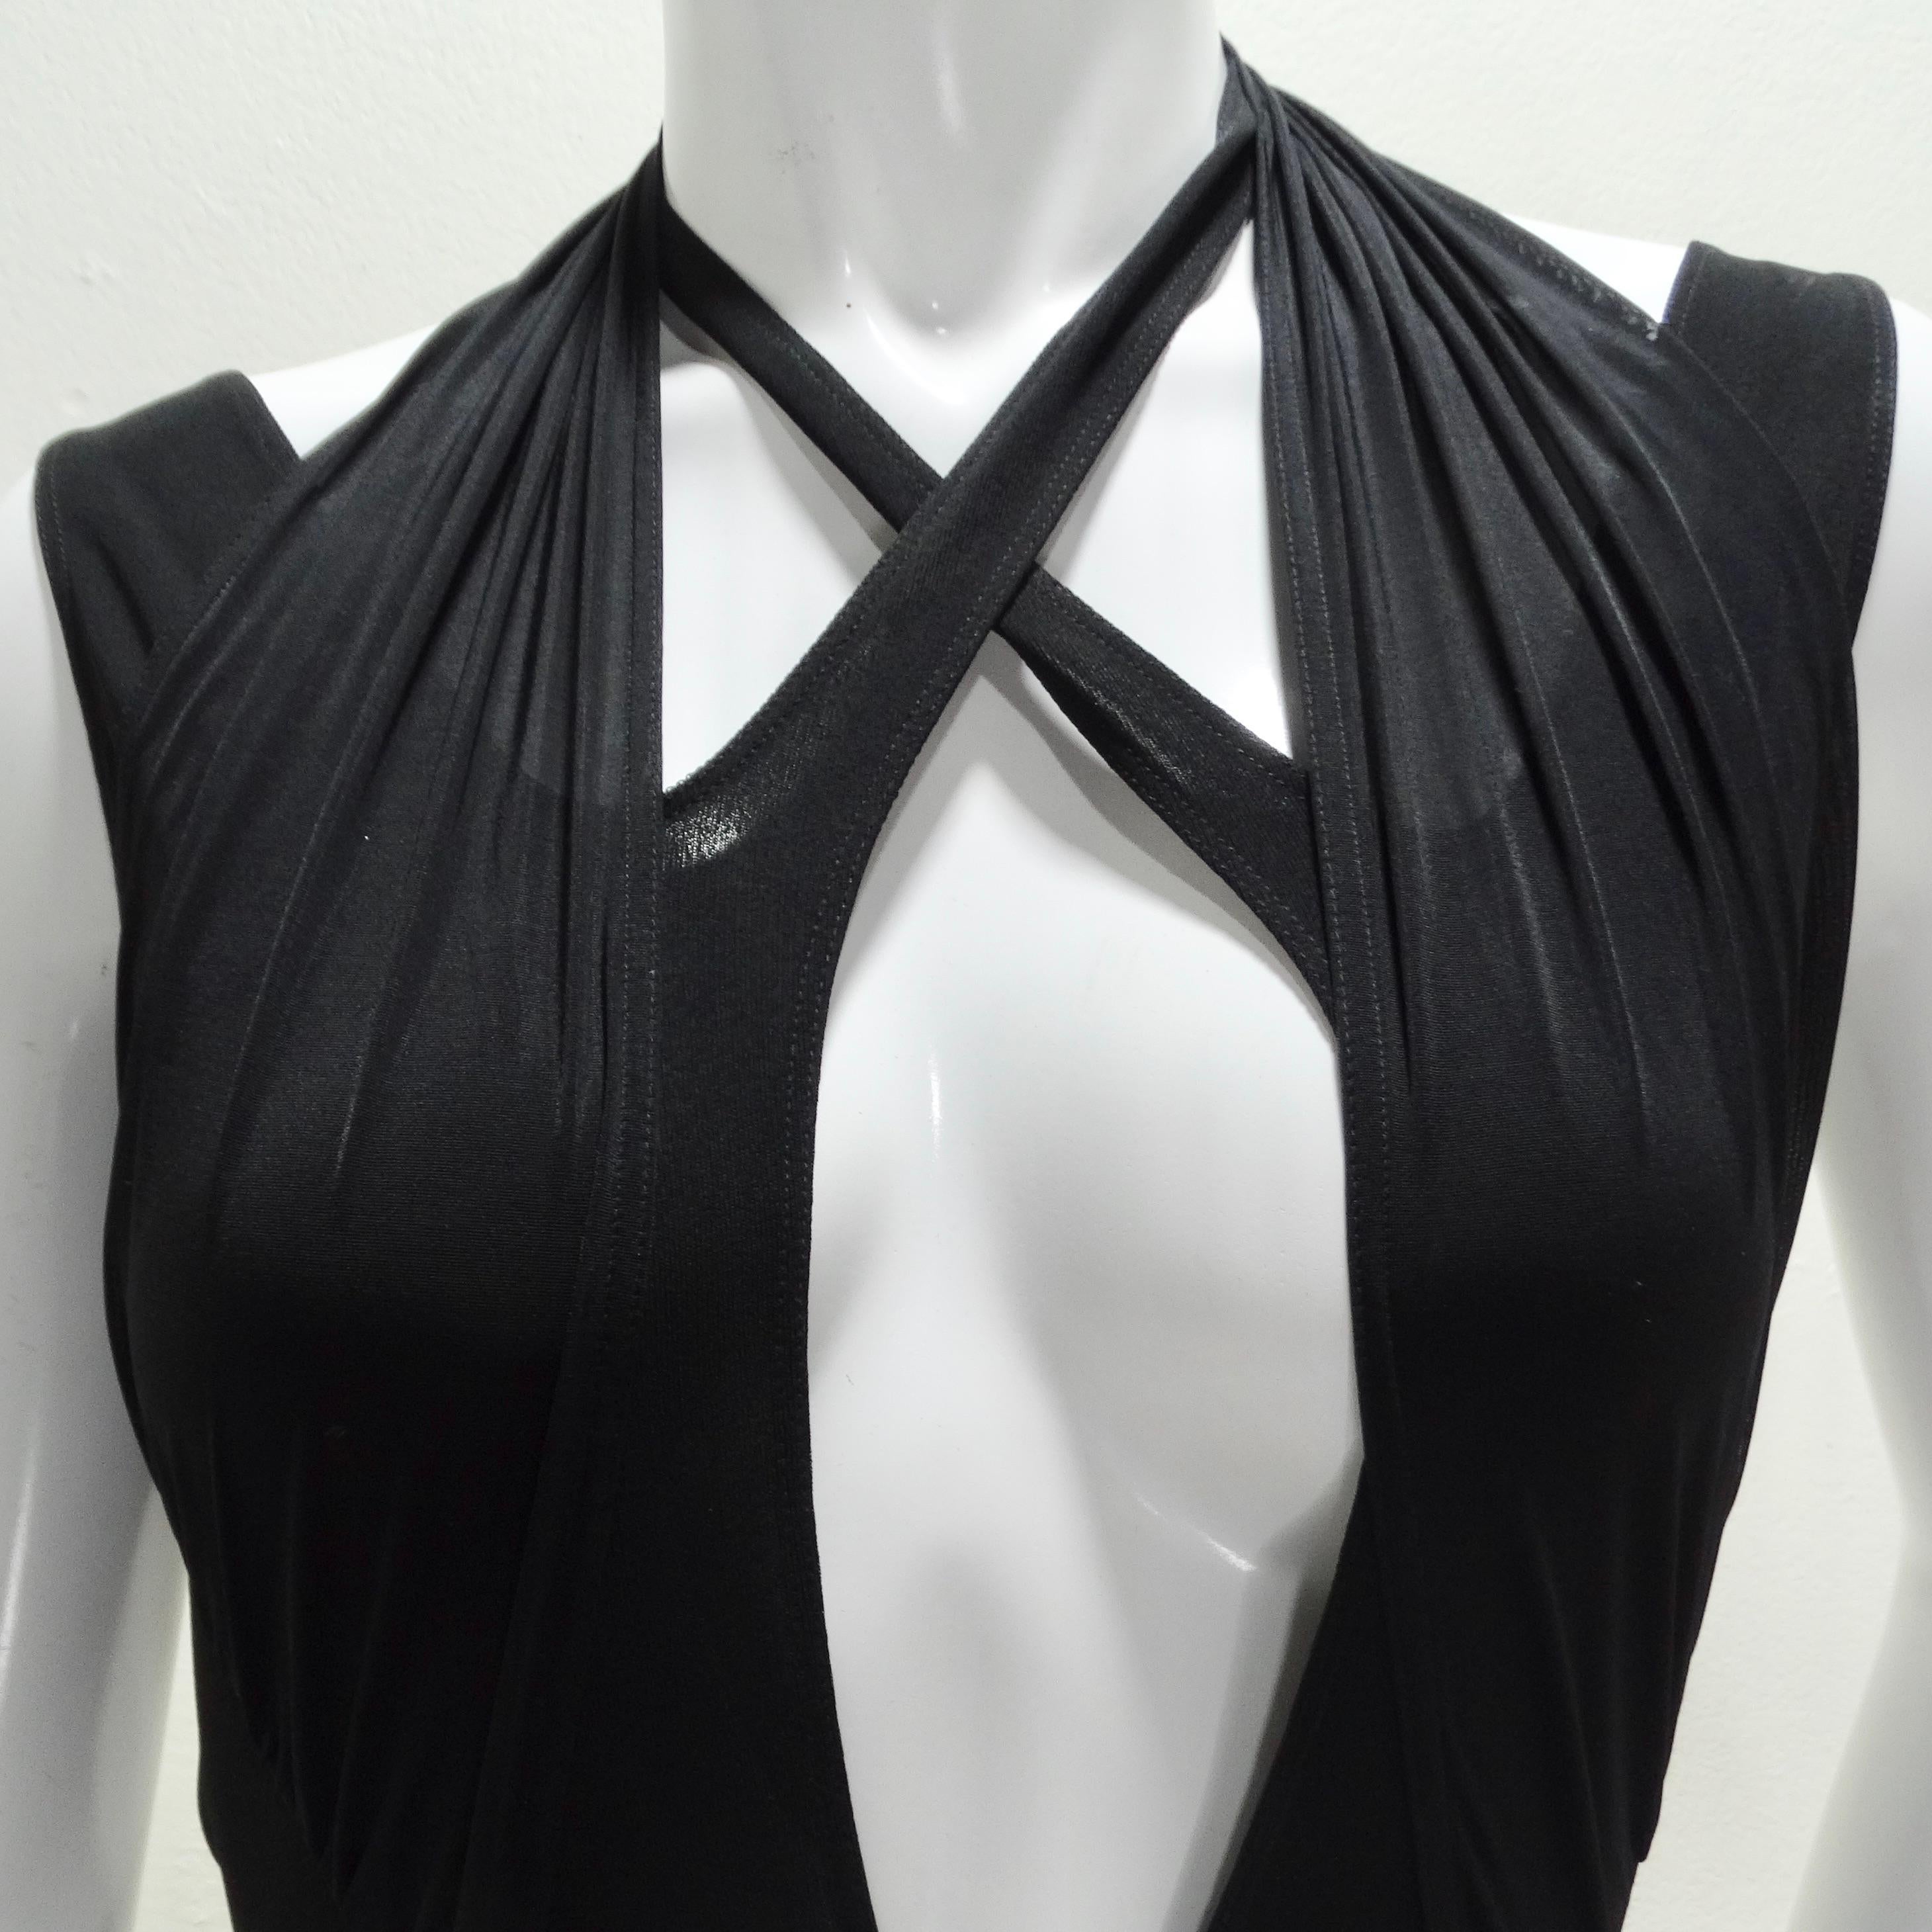 Der Mugler Black Criss Cross Bodysuit ist eine kühne Verkörperung von eleganter Modernität und unbestreitbarer Anziehungskraft. Dieser ärmellose Body aus Viskose-Jersey in zeitlosem Schwarz besticht durch seinen V-Ausschnitt mit überkreuzten Trägern